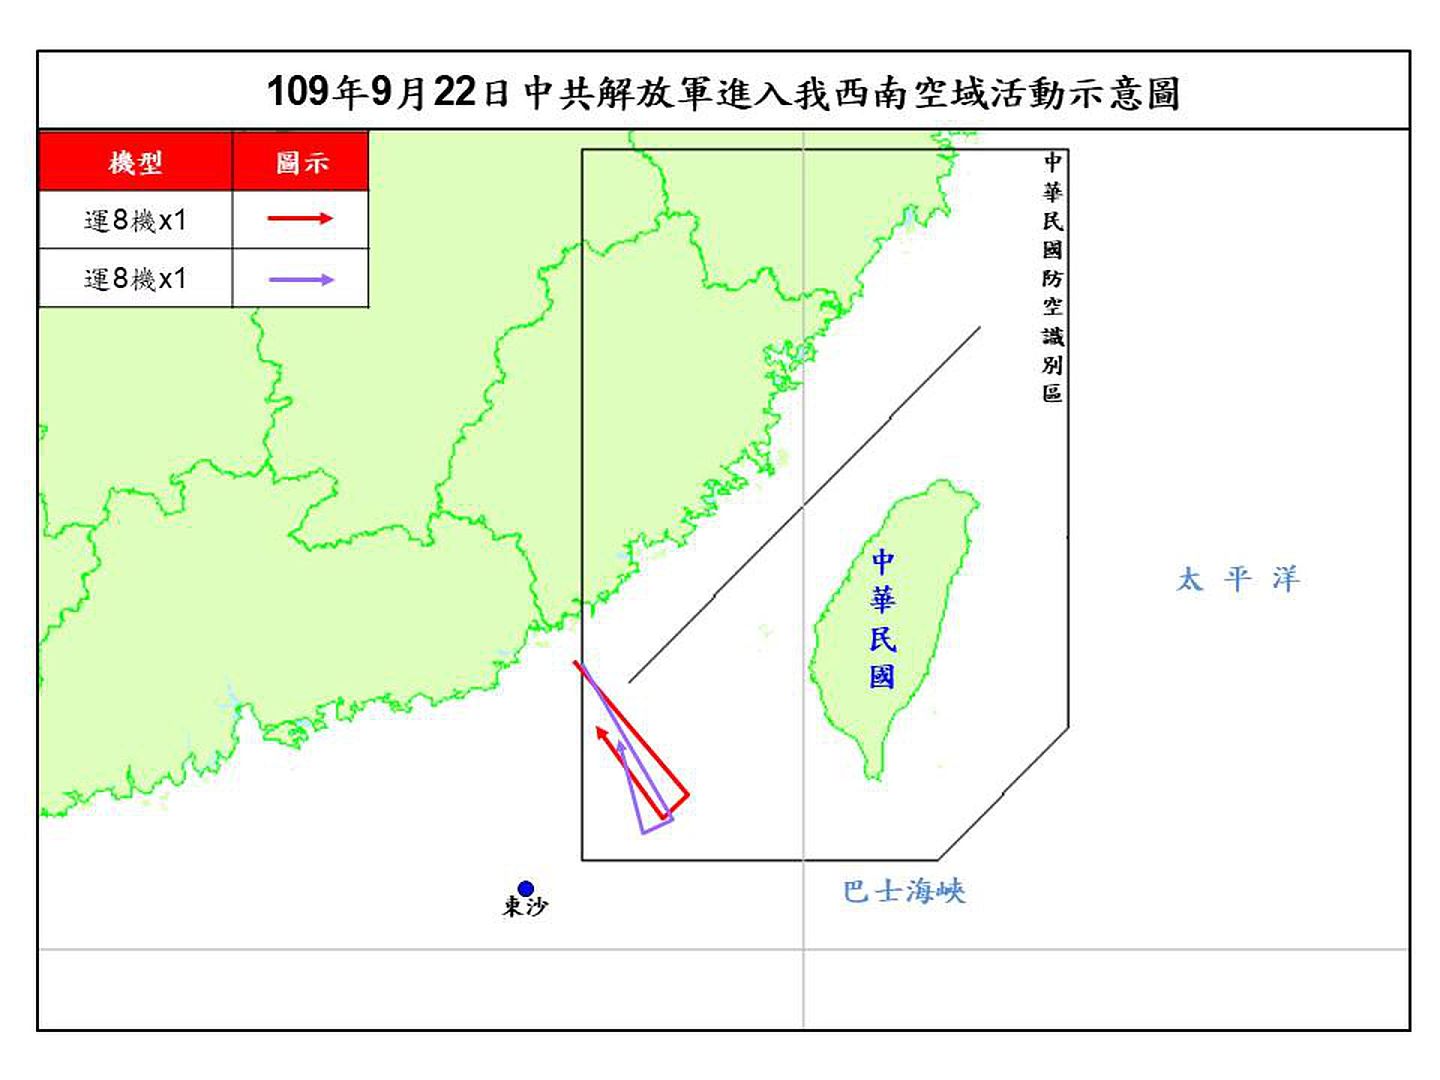 9月22日的运8Q反潜机航迹图。（台湾国防部提供）